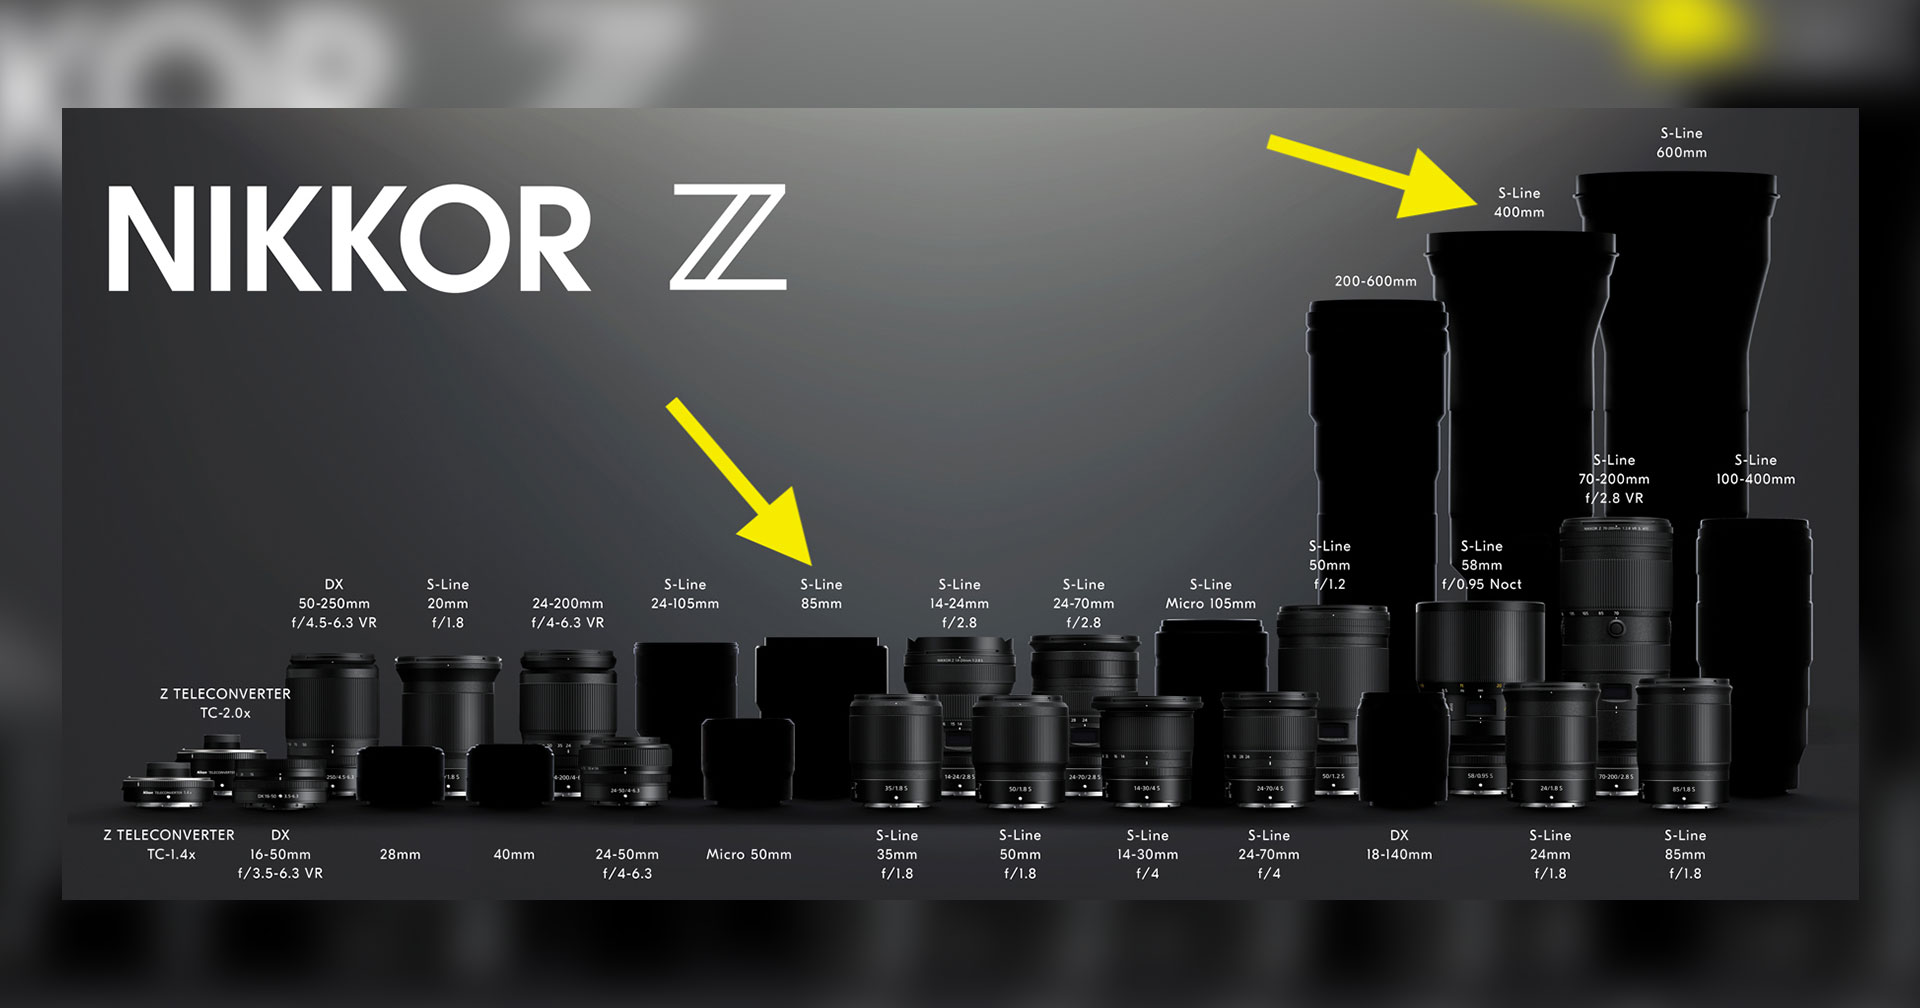 ลือ Nikon เตรียมเปิดตัวเลนส์ Nikkor Z  f/1.2 ตัวใหม่ และ 400mm f/2.8 เร็ว ๆ นี้